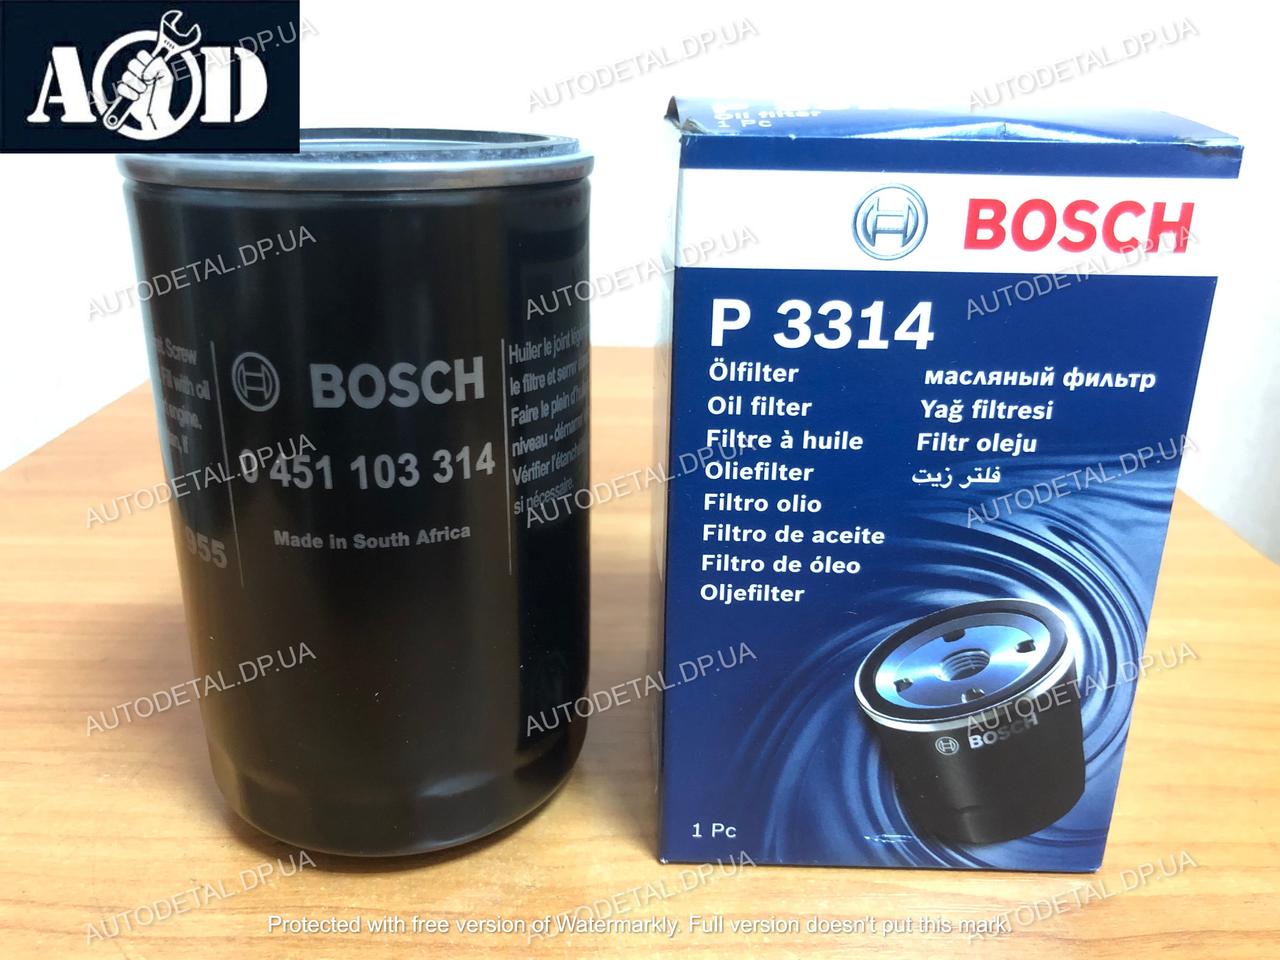 Фільтр масляний Шкода Октавія А5 1.6 2004-->2012 Bosch (Німеччина) 0 451 103 314